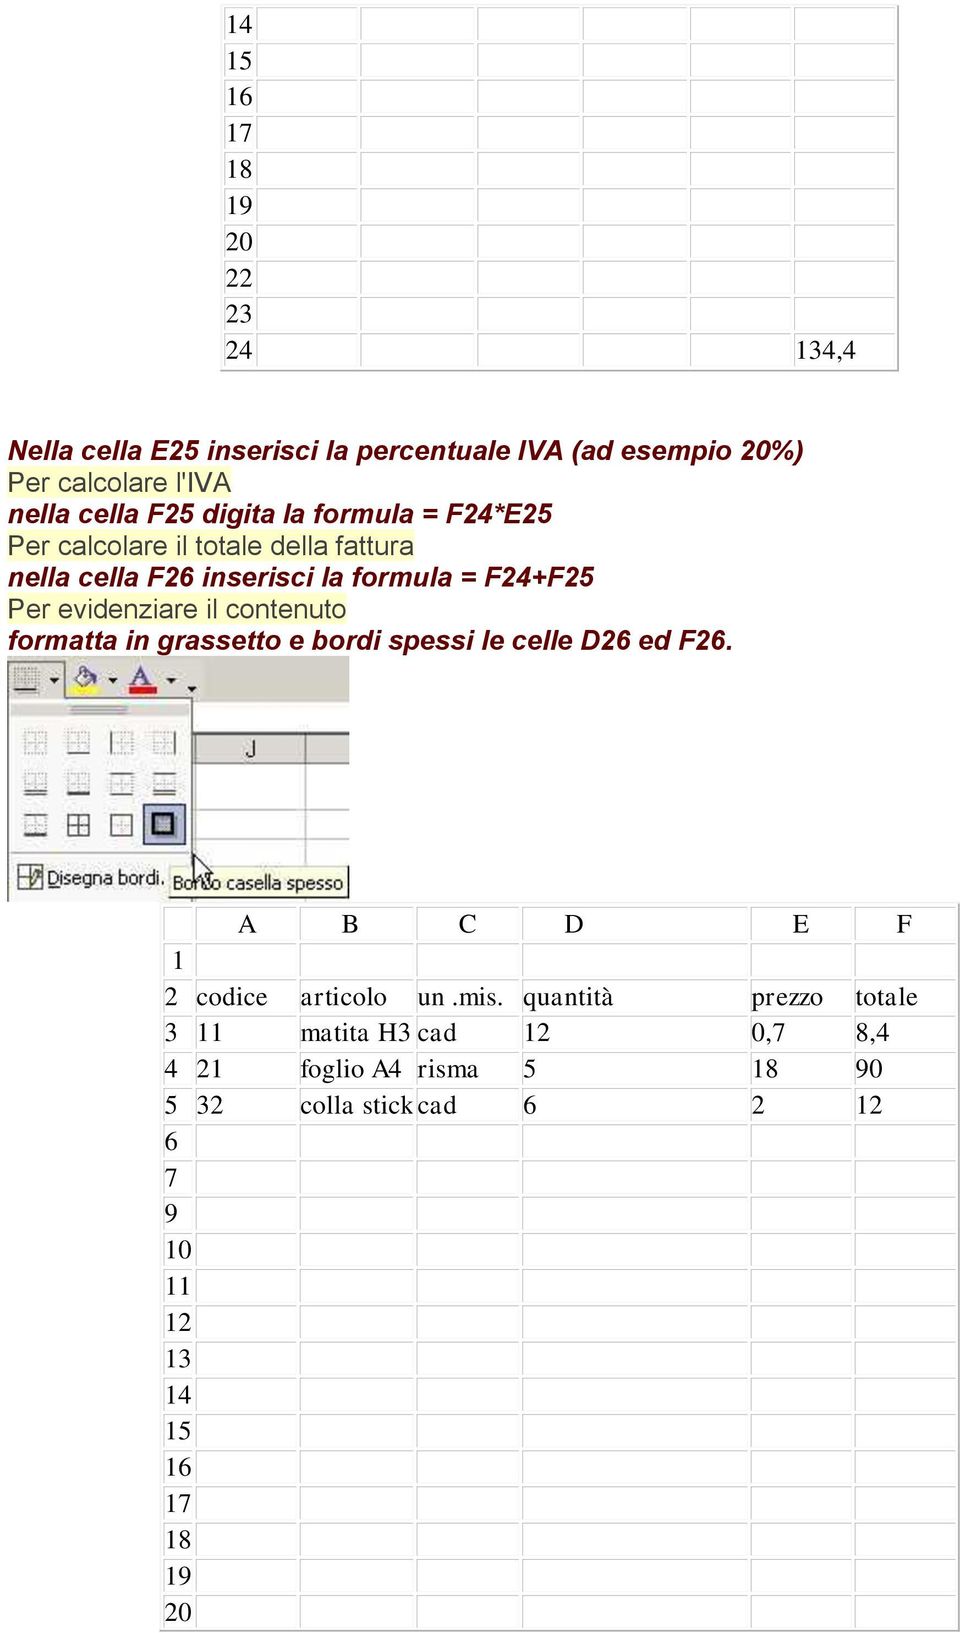 inserisci la formula = F24+F25 Per evidenziare il contenuto formatta in grassetto e bordi spessi le celle